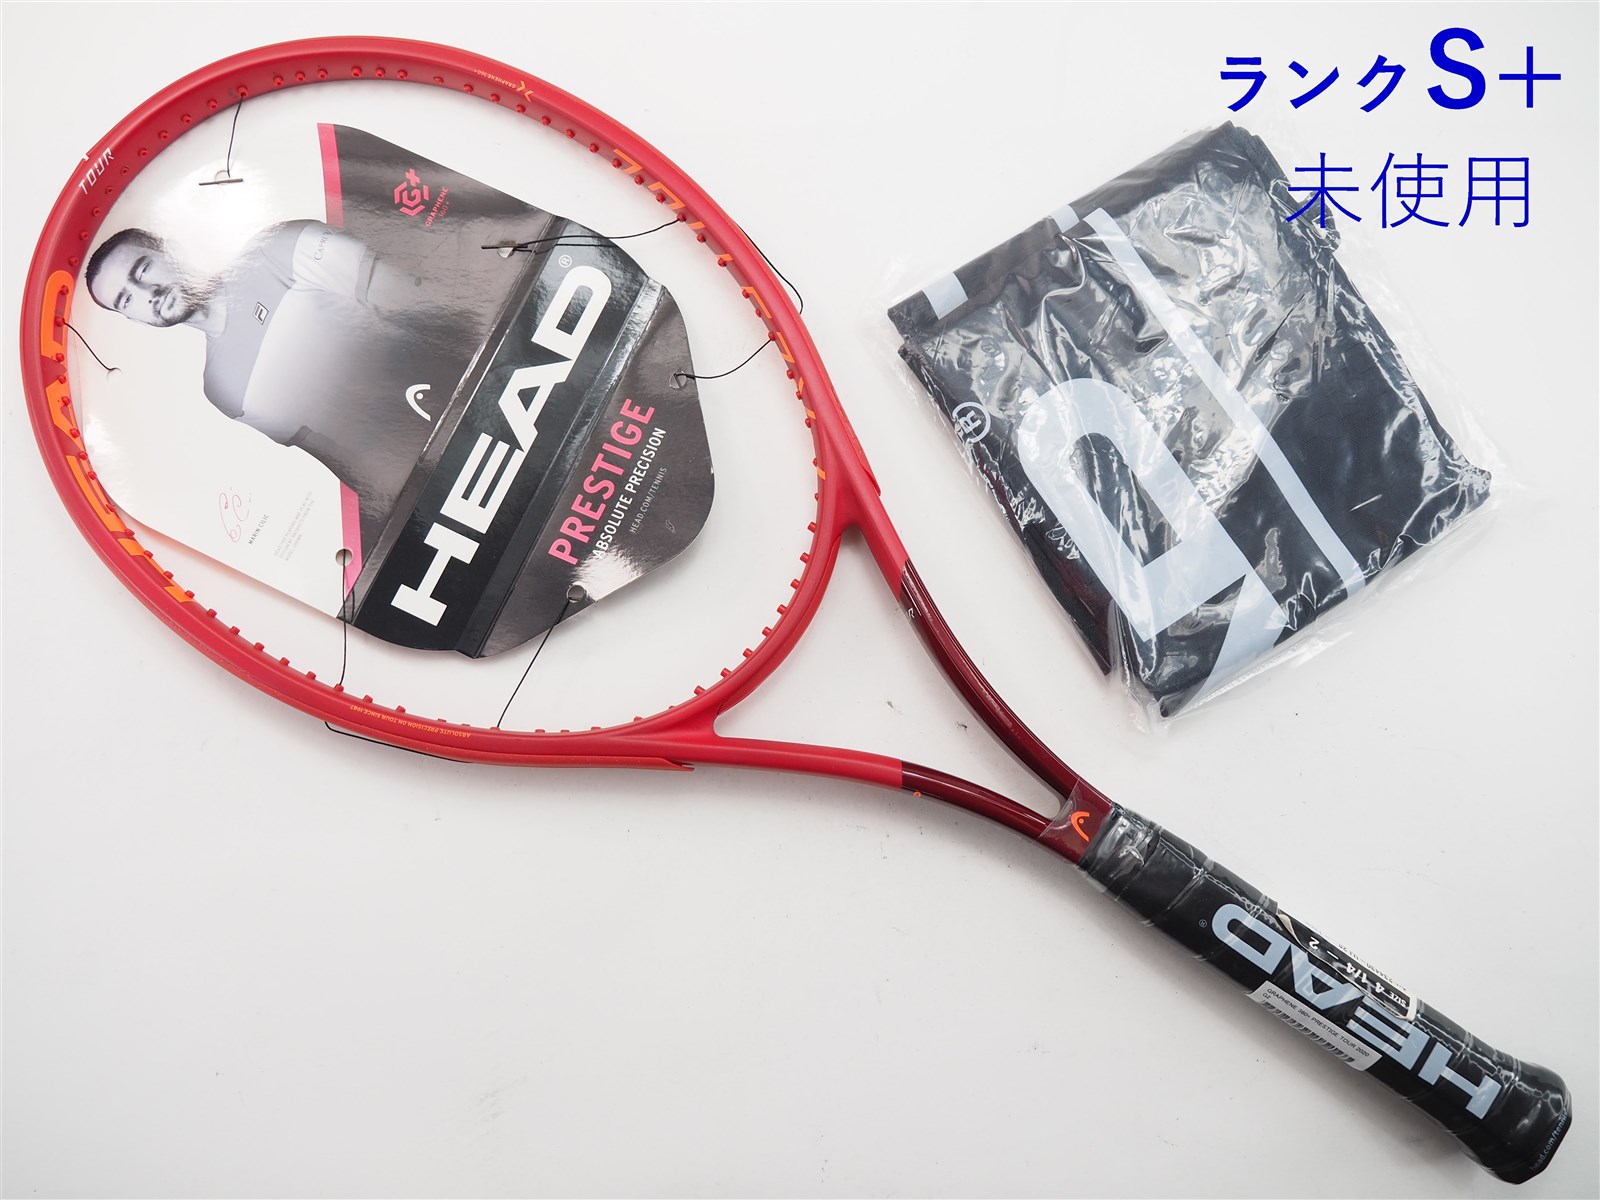 テニスラケット ヘッド グラフィン 360プラス プレステージ ミッド 2020年モデル (G2)HEAD GRAPHENE 360+ PRESTIGE MID 2020